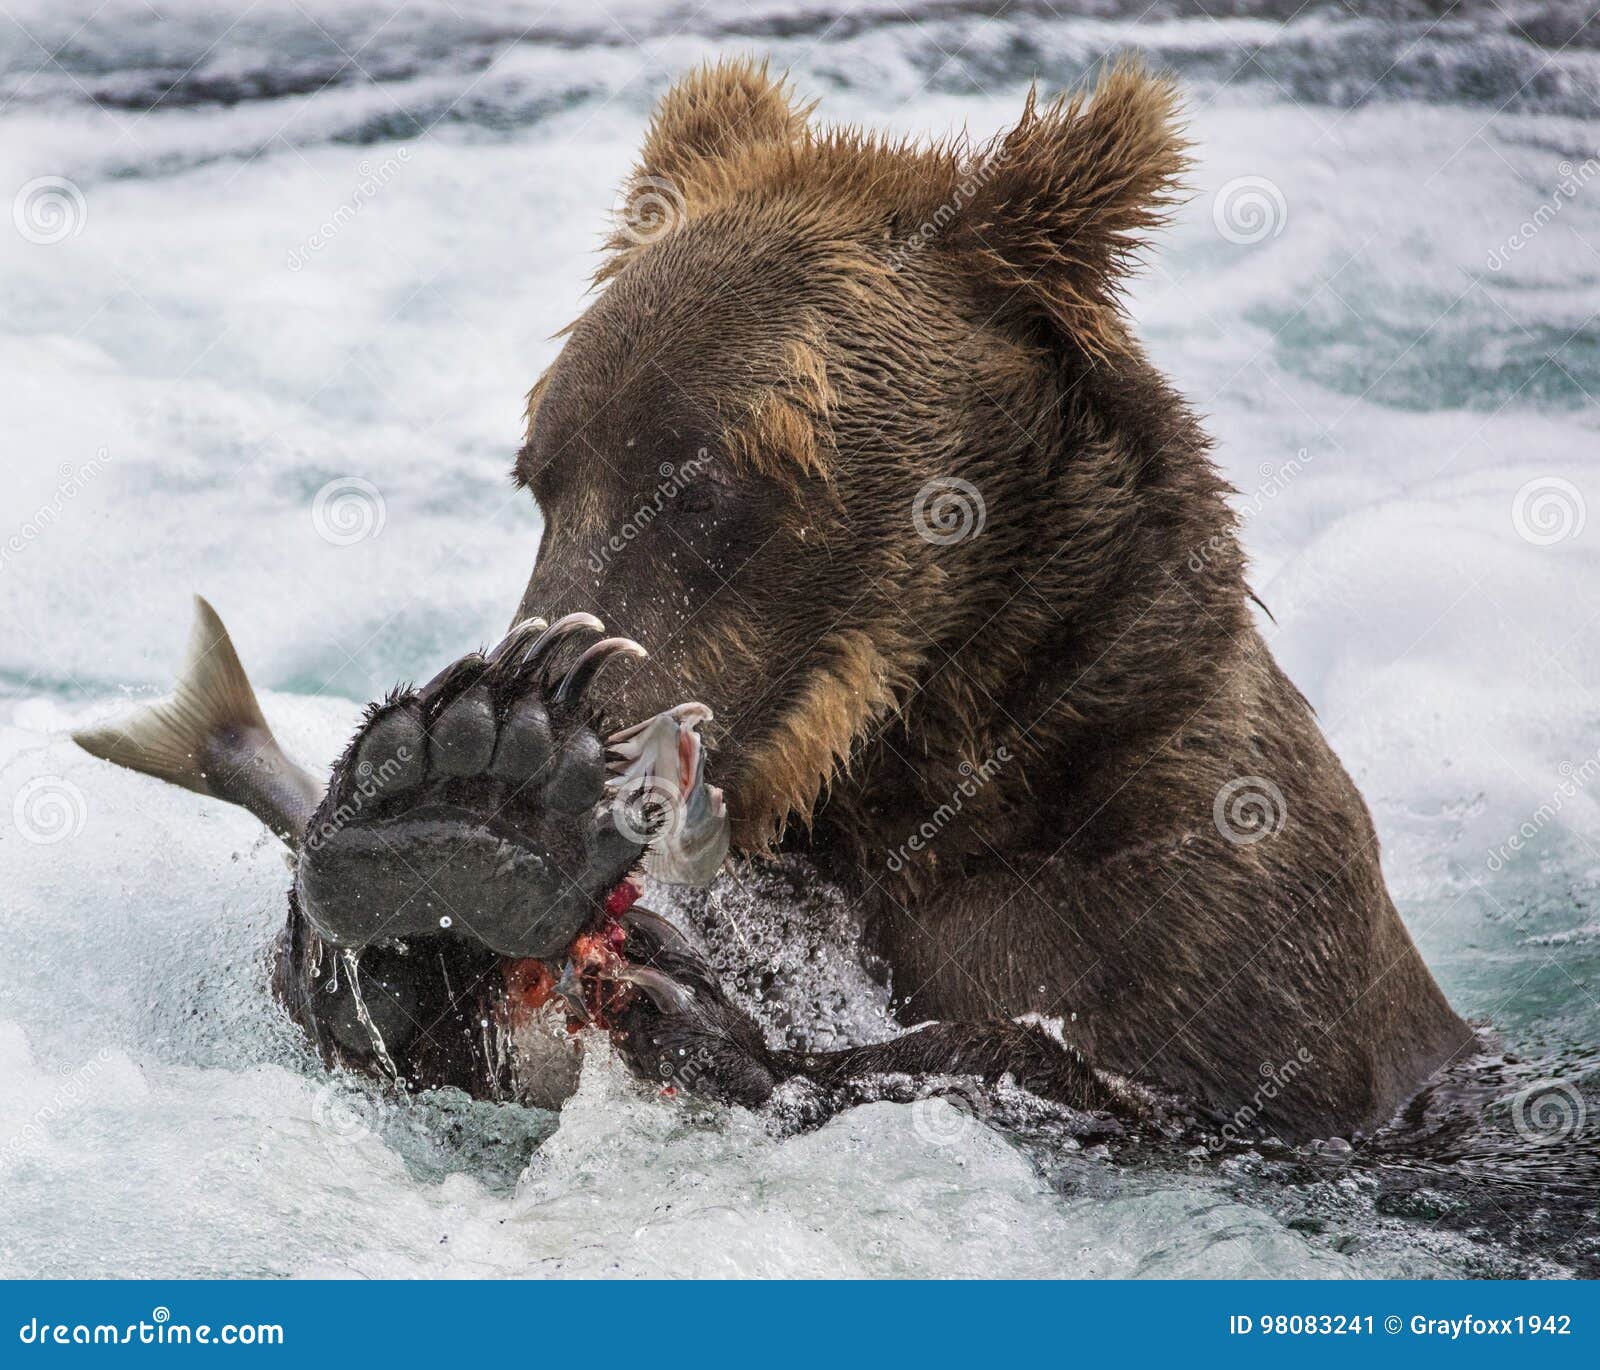 katmai brown bear with a salmon